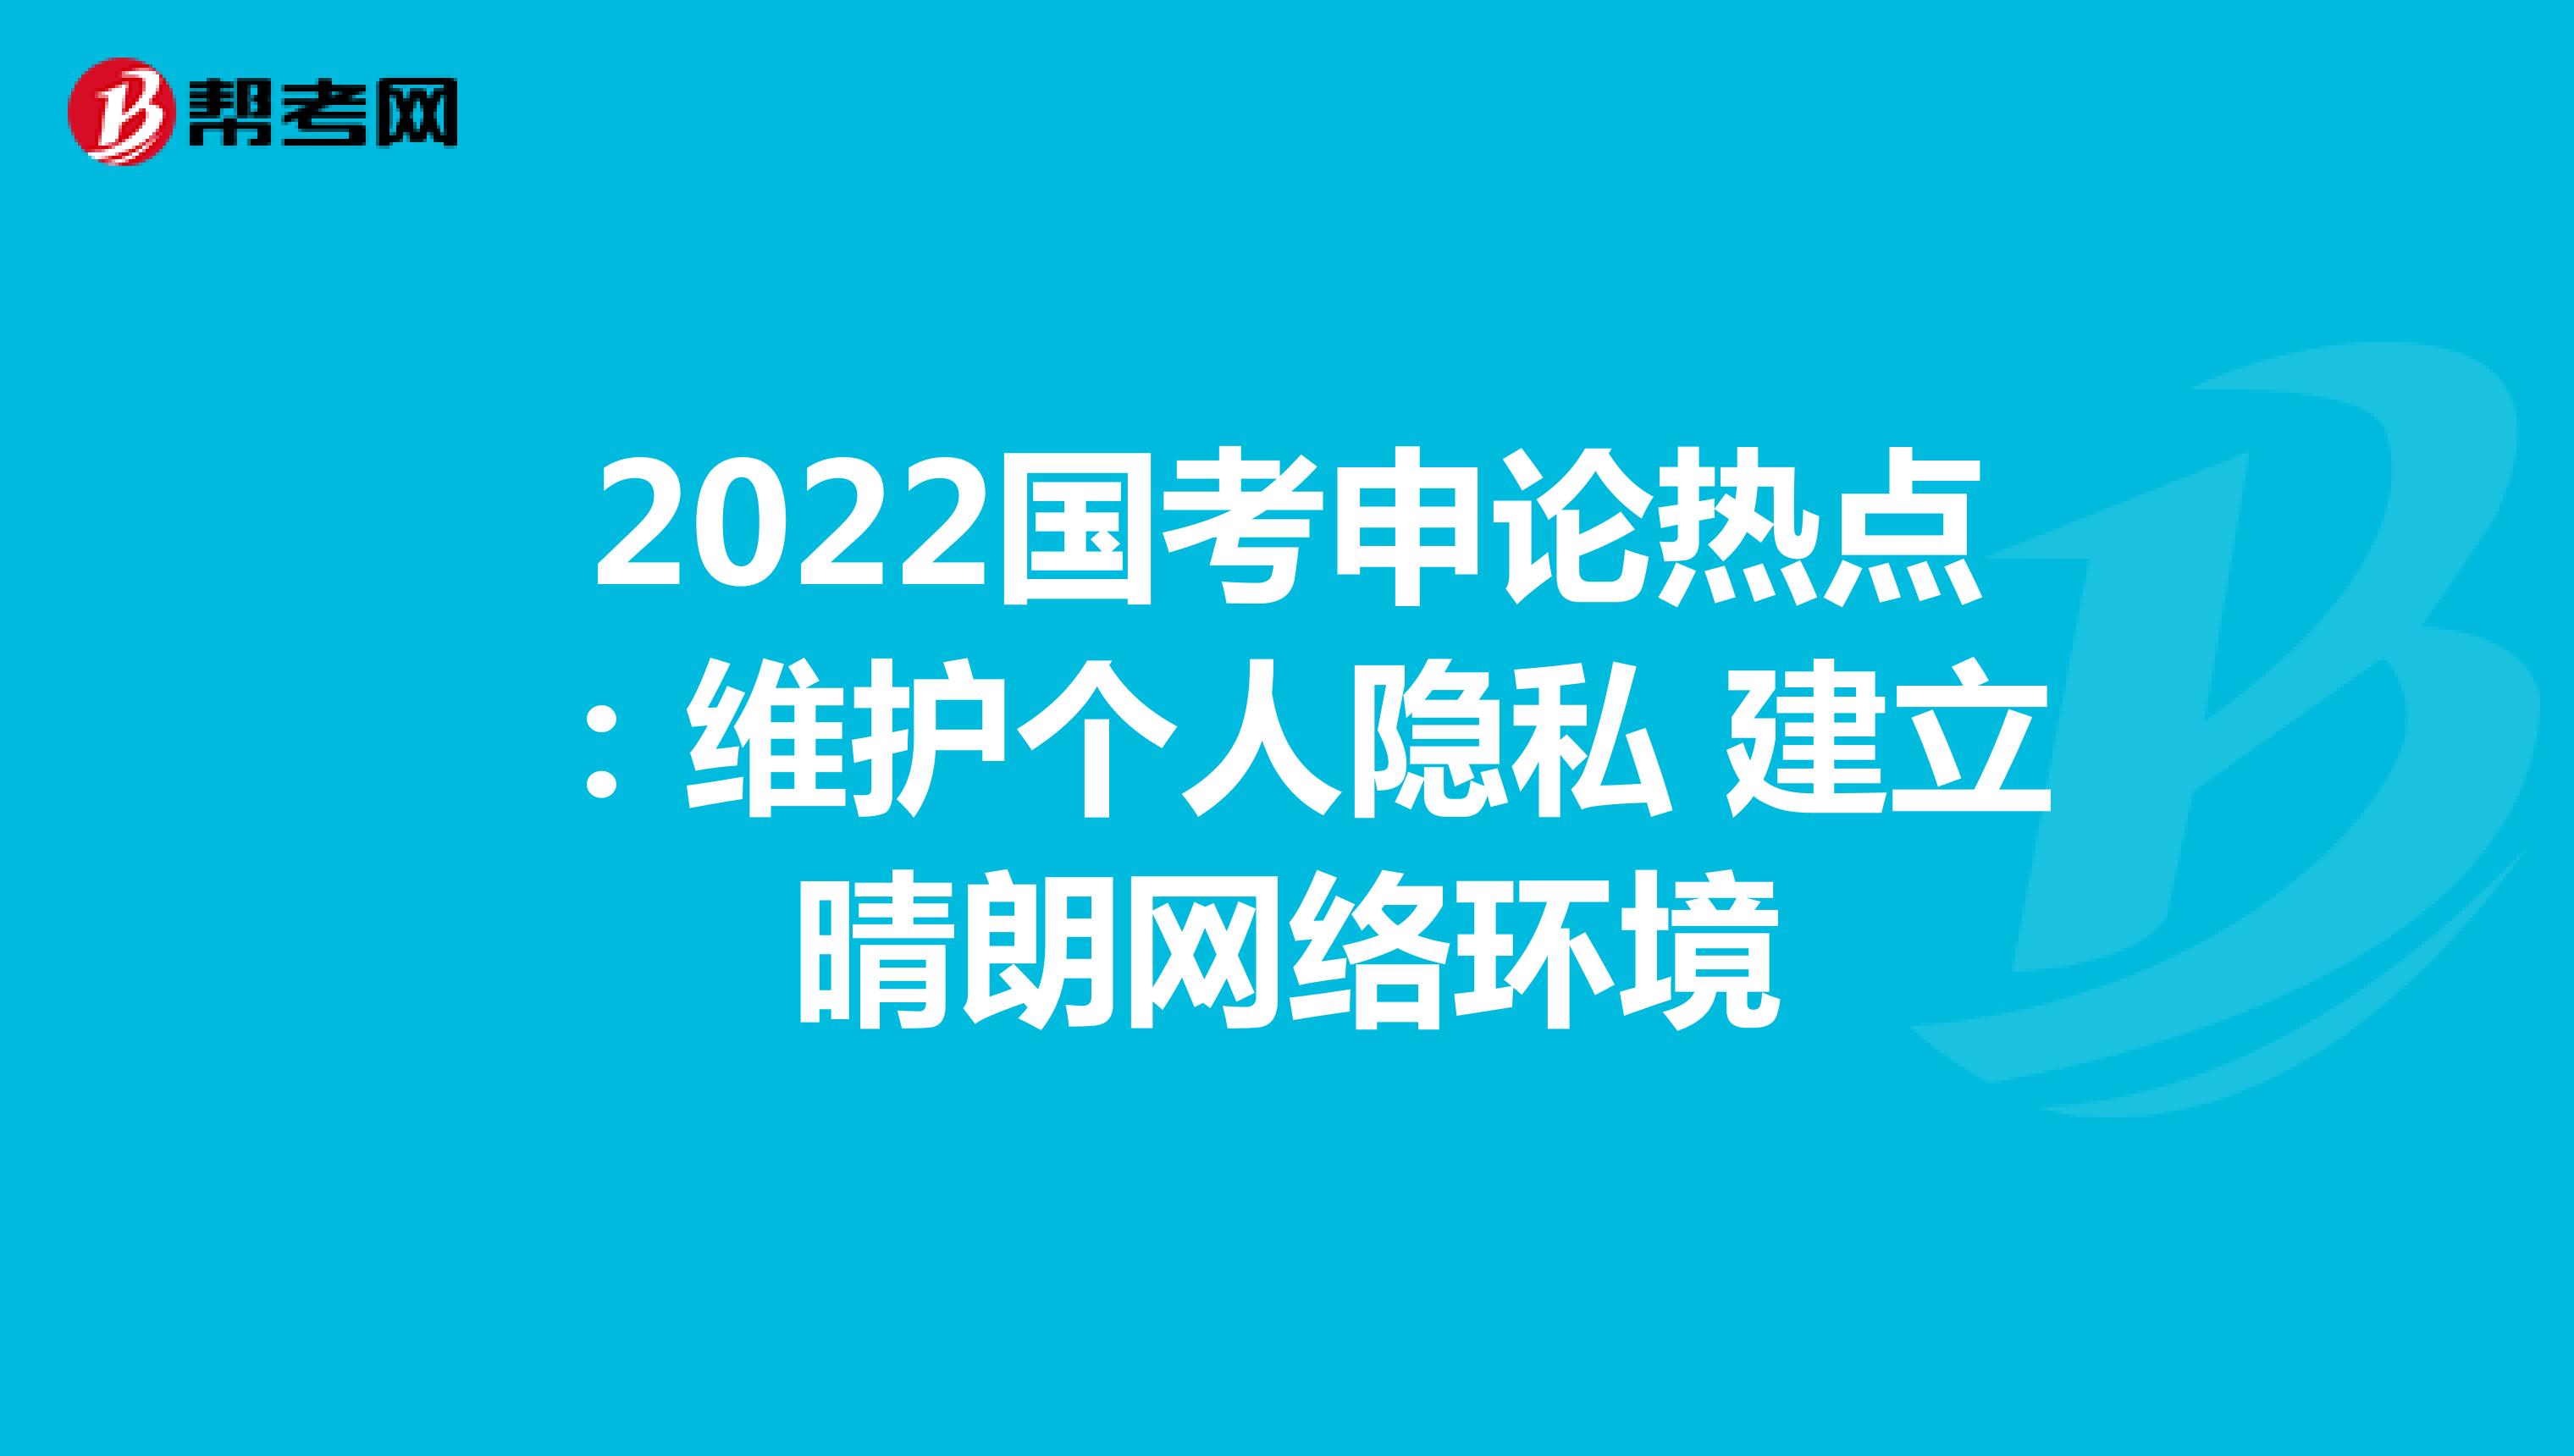 2022国考申论热点：维护个人隐私 建立晴朗网络环境